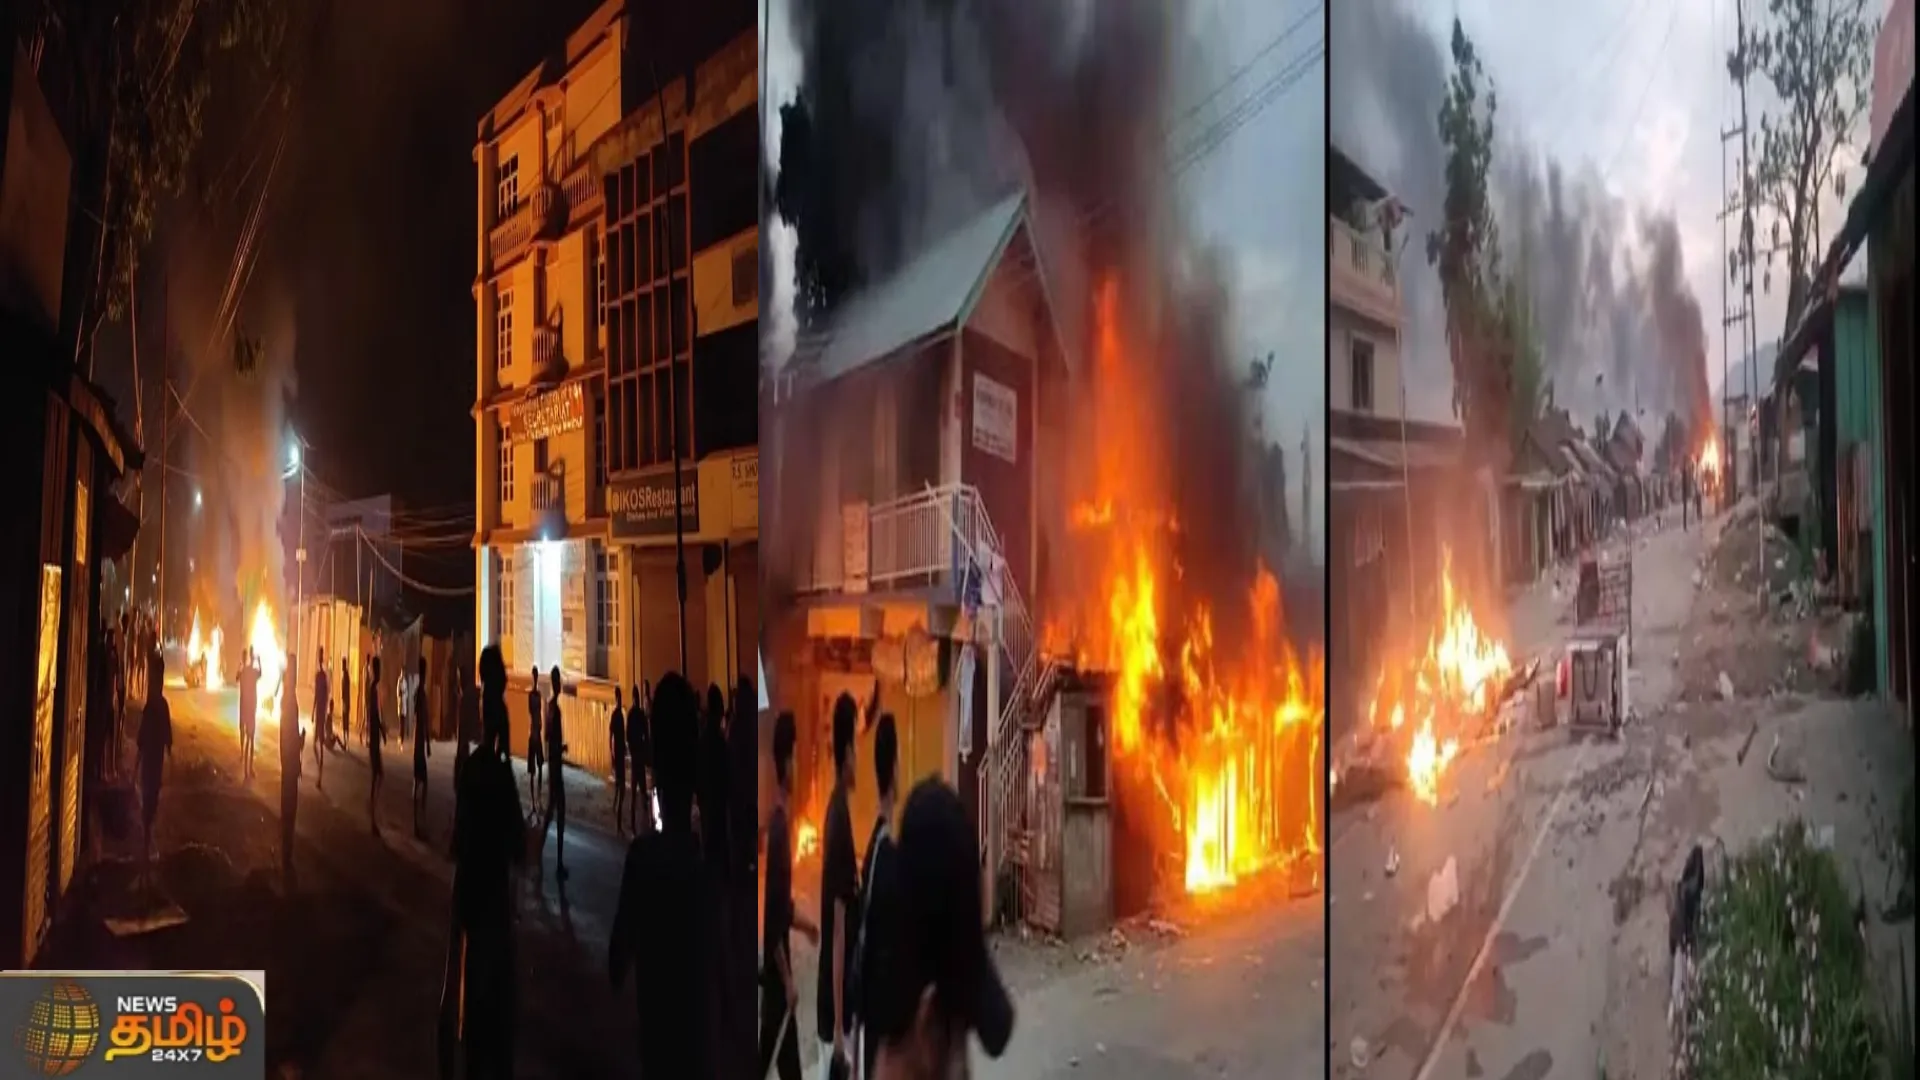 மணிப்பூரில் கட்டுக்கடங்காத கலவரம் தொடரும் கொடூர கொலைகள் | Manipur news | What's happening in manipur